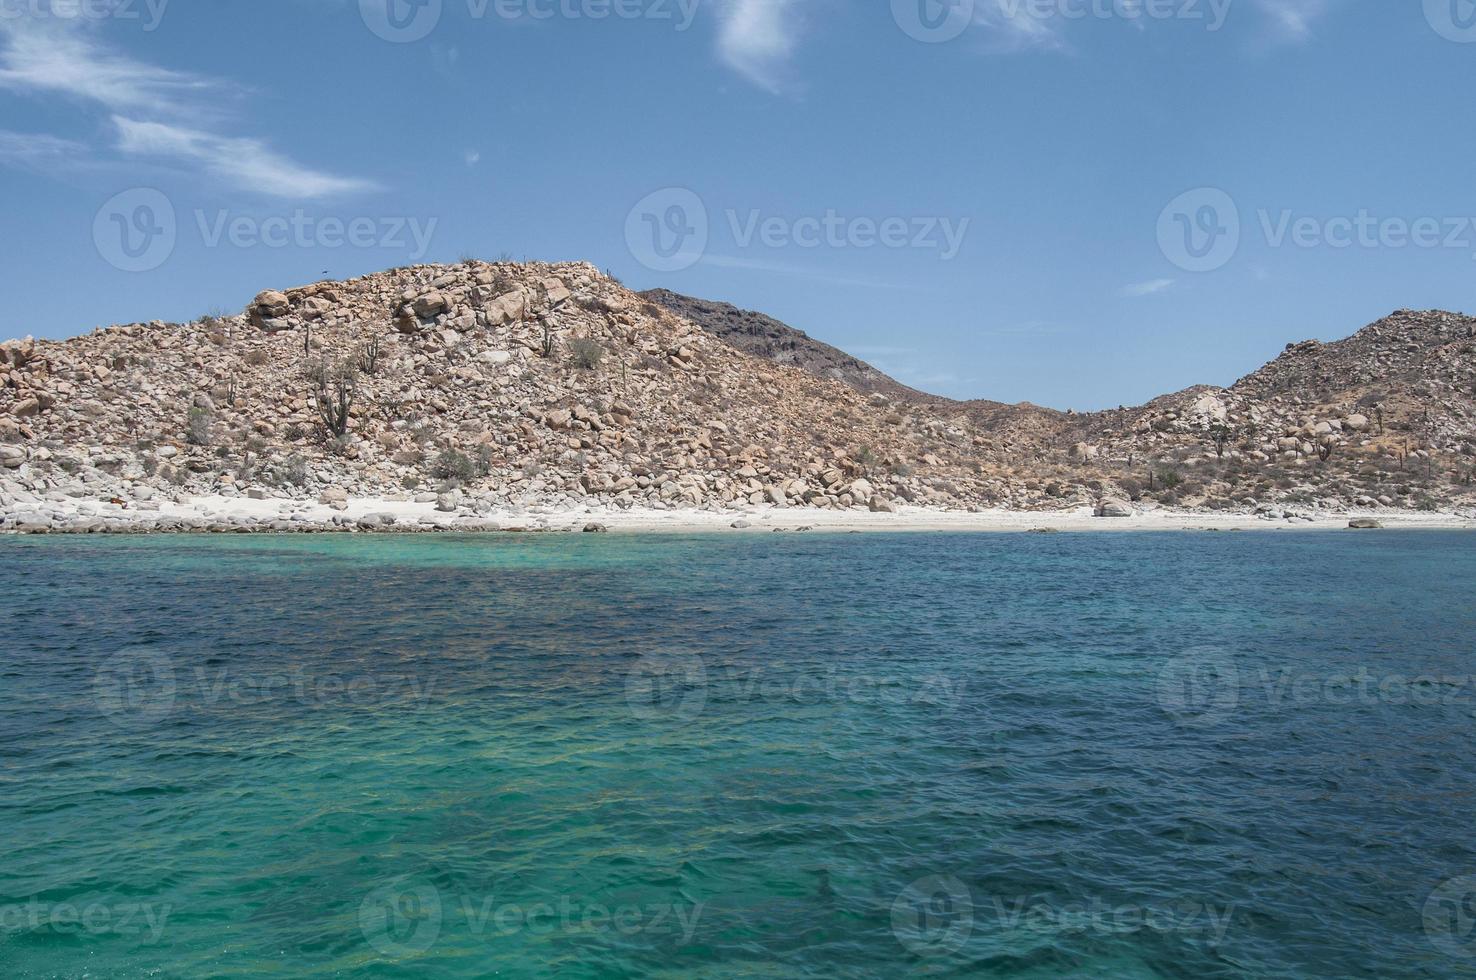 eilandengroep isla espiritu santo in la paz, baja california foto